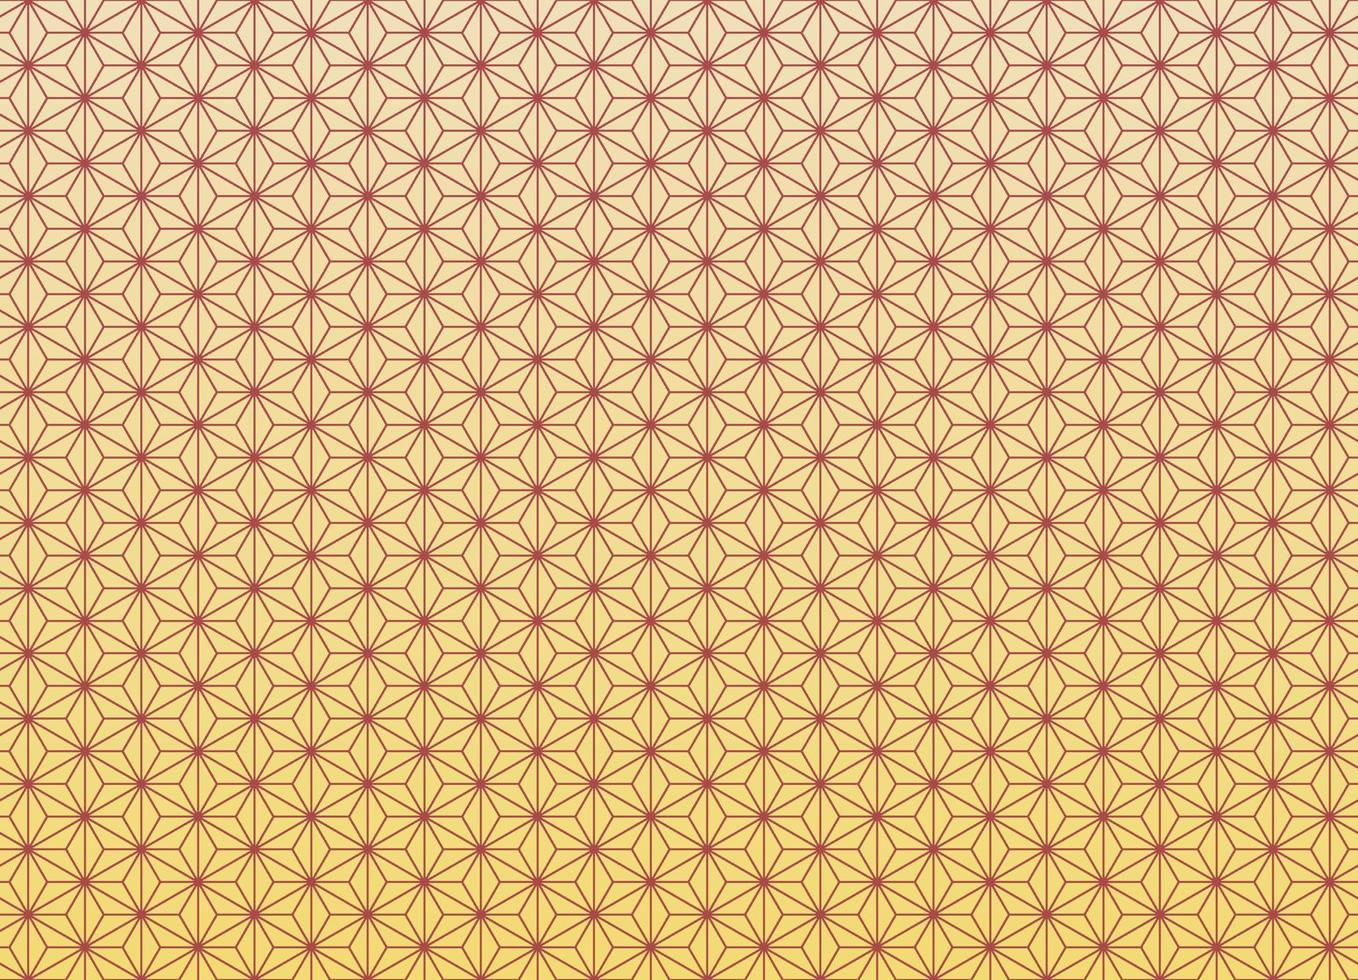 asanoha japanisches traditionelles nahtloses muster mit rot- und gelbgoldenem farbverlaufshintergrund. verwendung für stoff, textil, abdeckung, verpackung, dekorationselemente. vektor